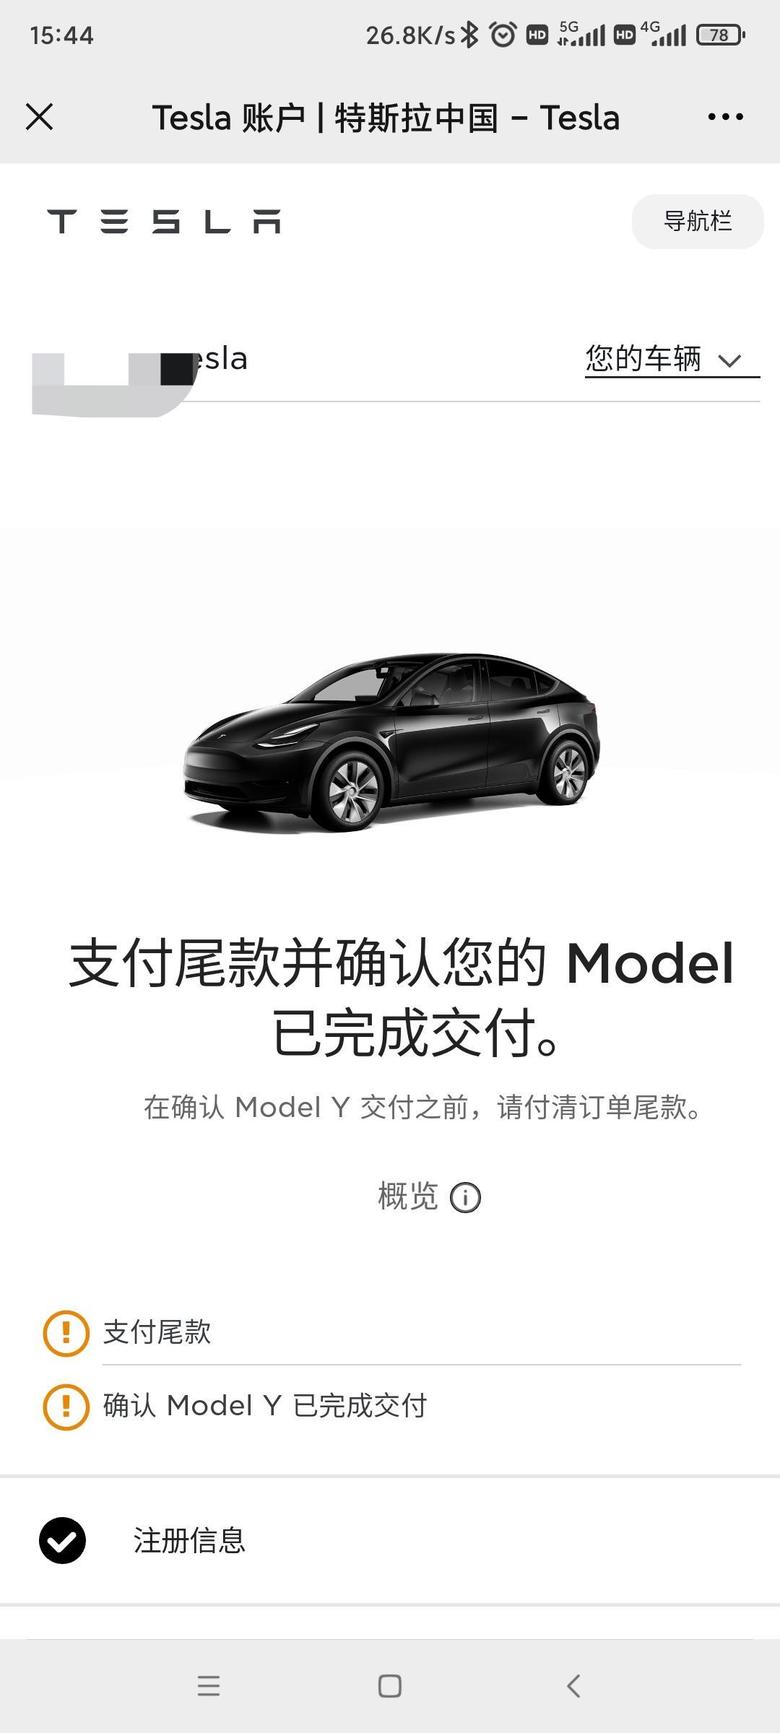 model y 深圳7.11订单号178终于匹配上了8月最后的惊喜